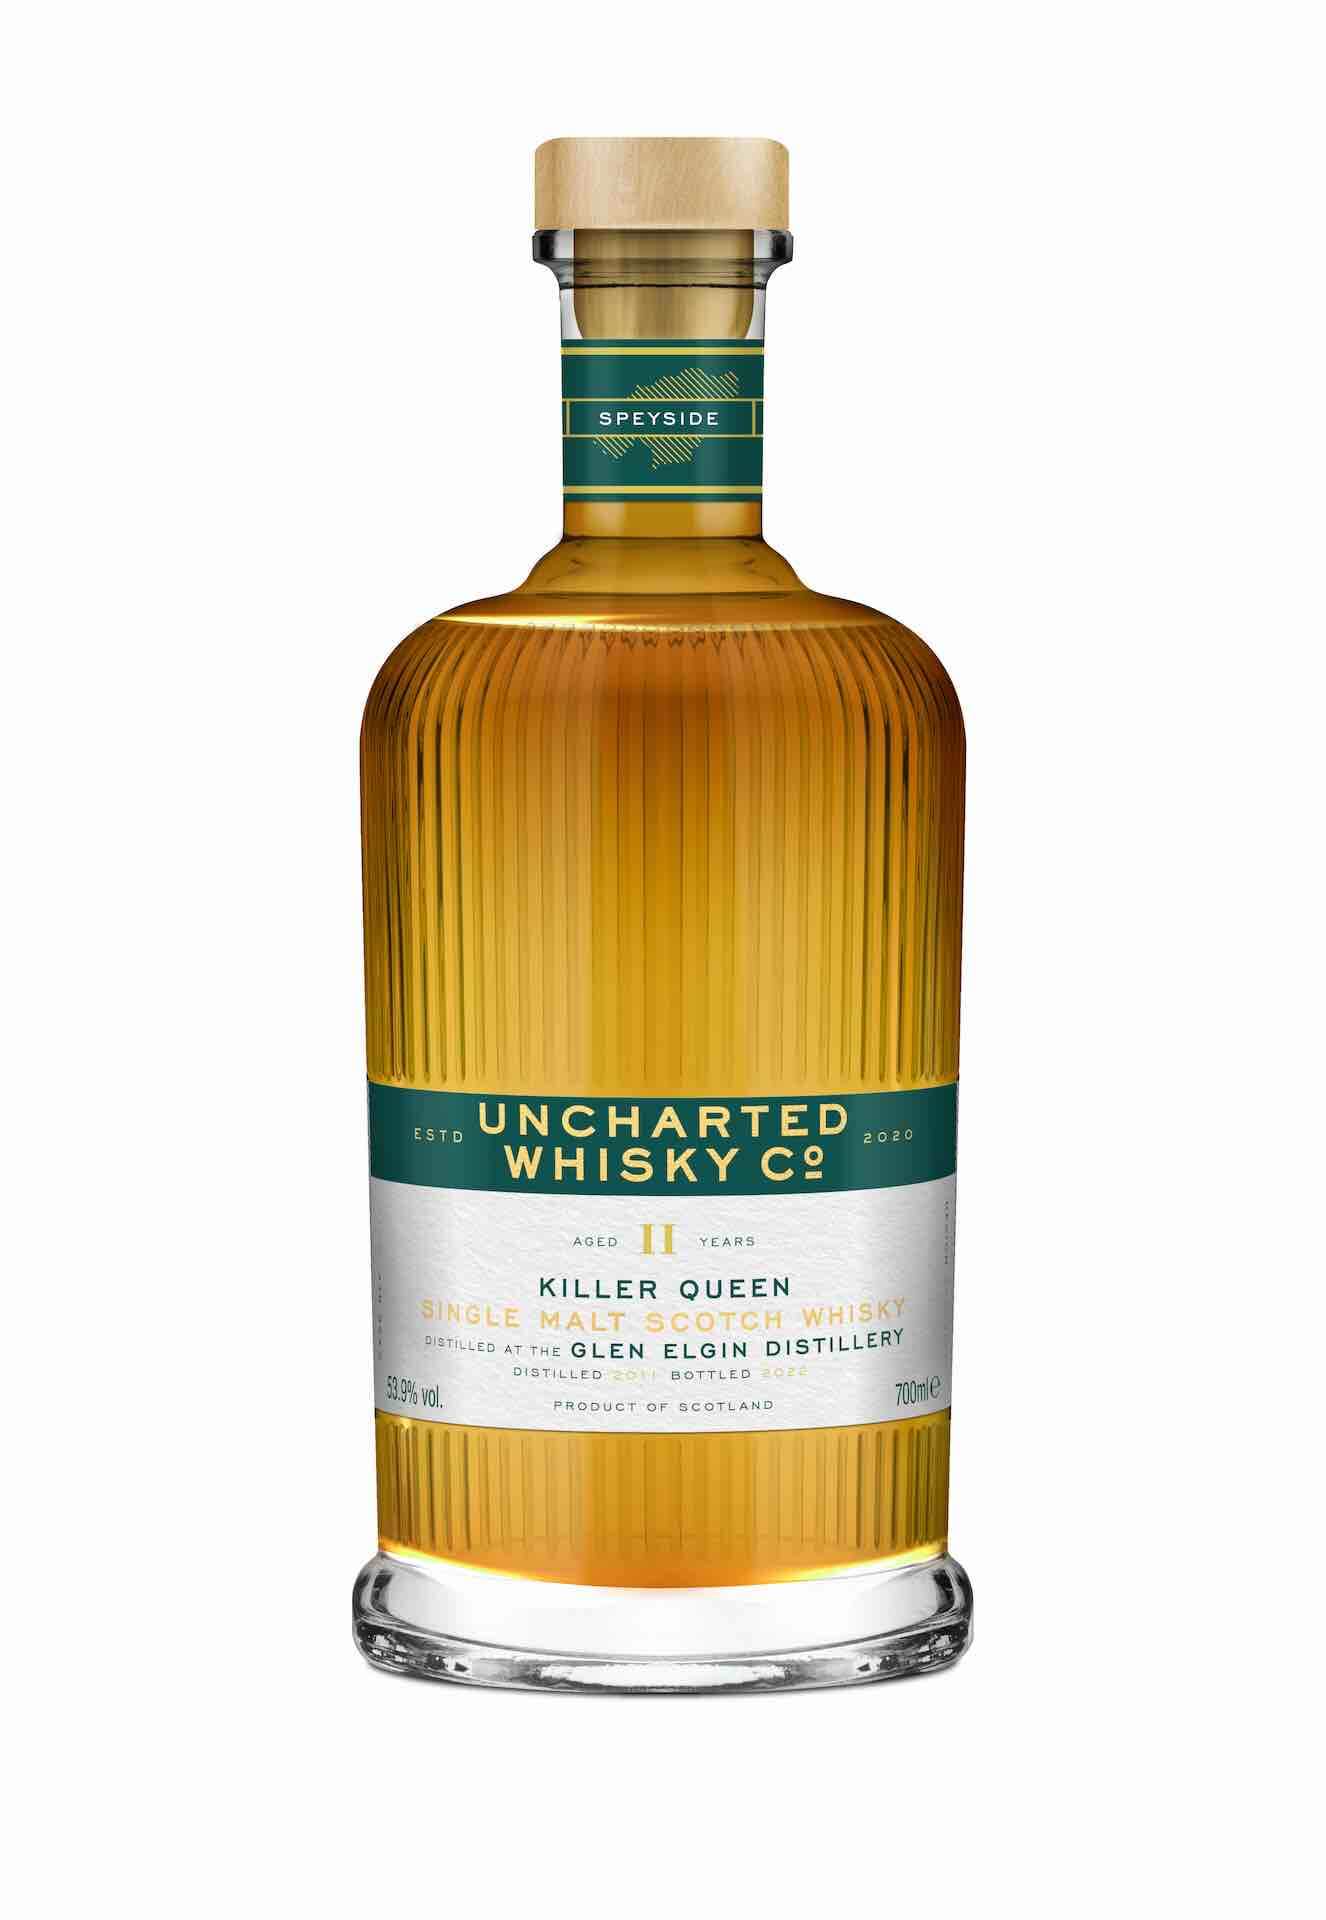 Uncharted Whisky Co, Killer Queen, Glen Elgin 11 Year Old